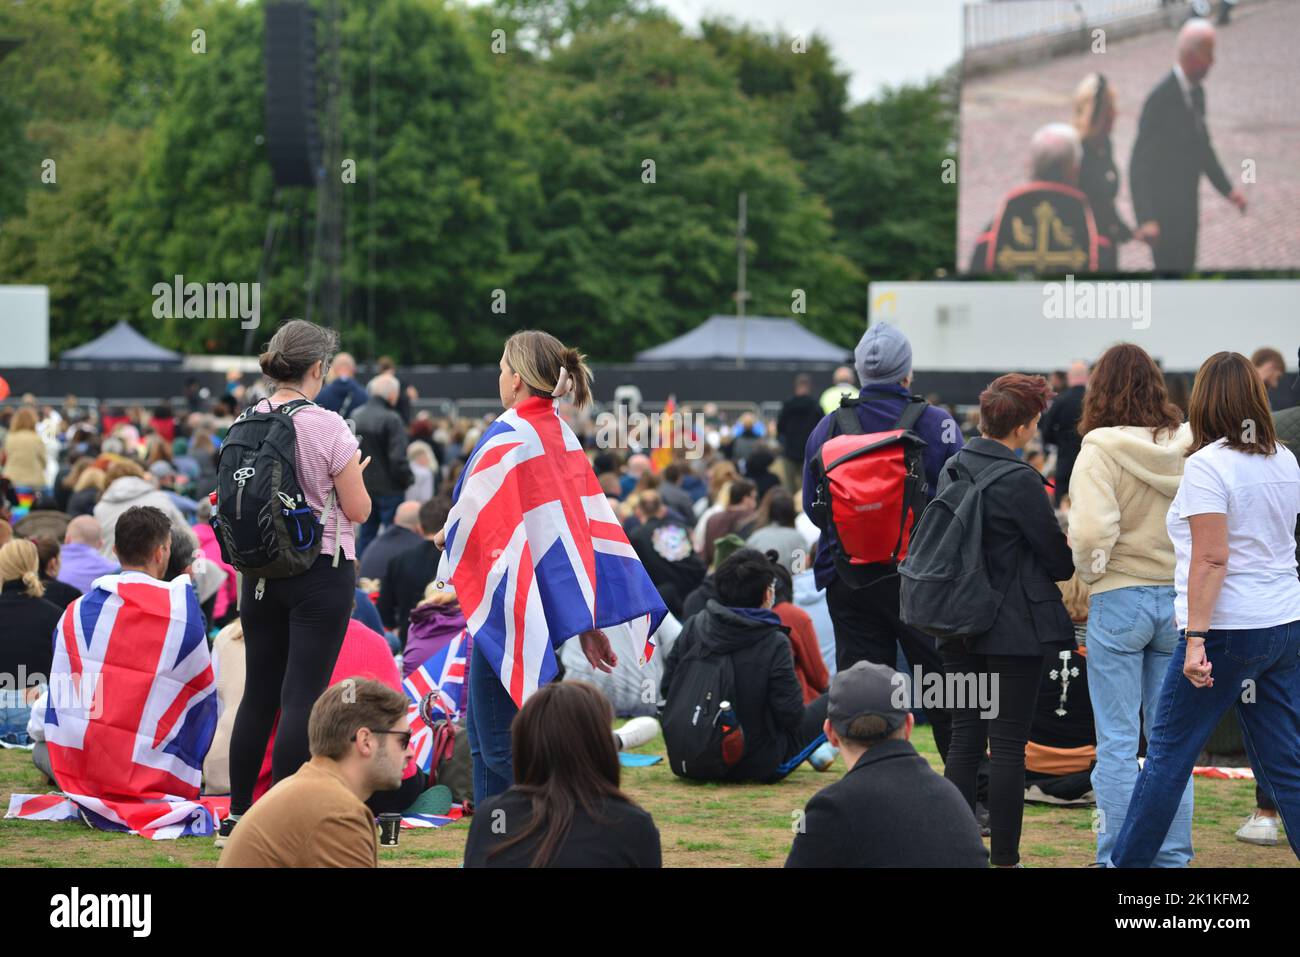 Staatsbegräbnis Ihrer Majestät Königin Elizabeth II., London, Großbritannien, Montag, 19.. September 2022. Menschenmassen im Hyde Park, um die Zeremonie auf einem großen Bildschirm zu sehen, einige in Gewerkschaftsflaggen gewickelt. Stockfoto